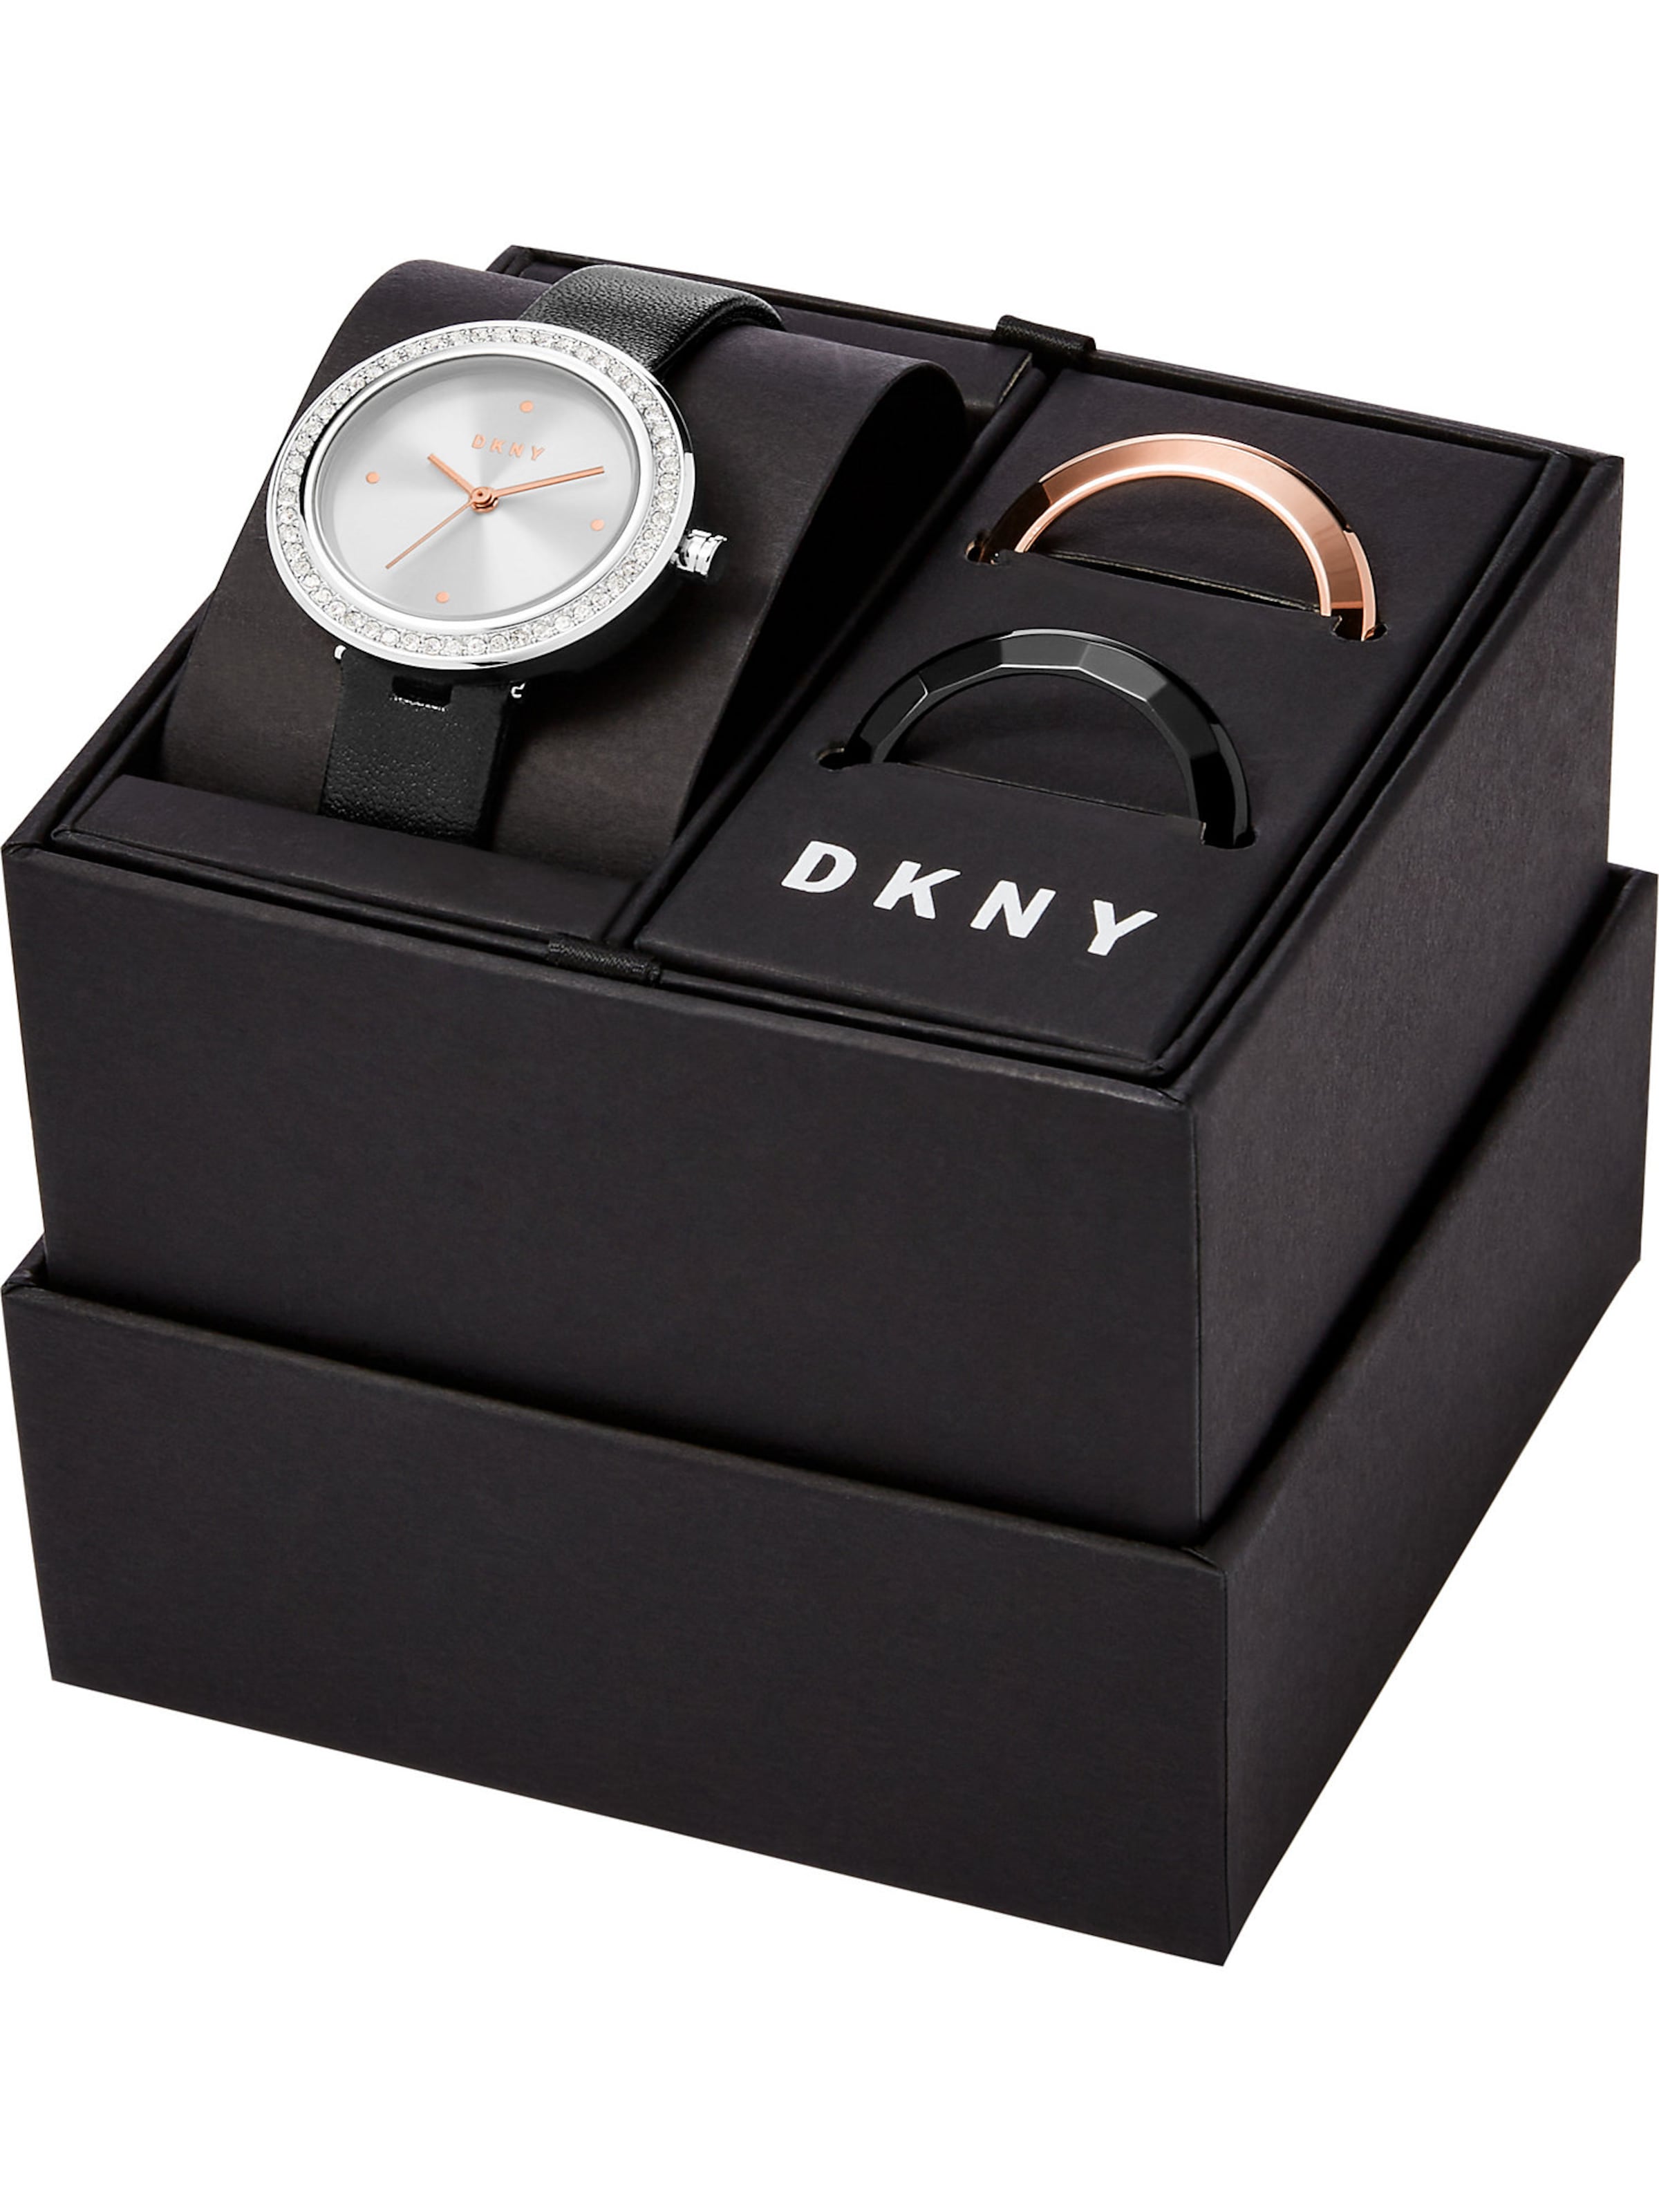 Frauen Uhren DKNY Set in Schwarz, Silber - WT03486